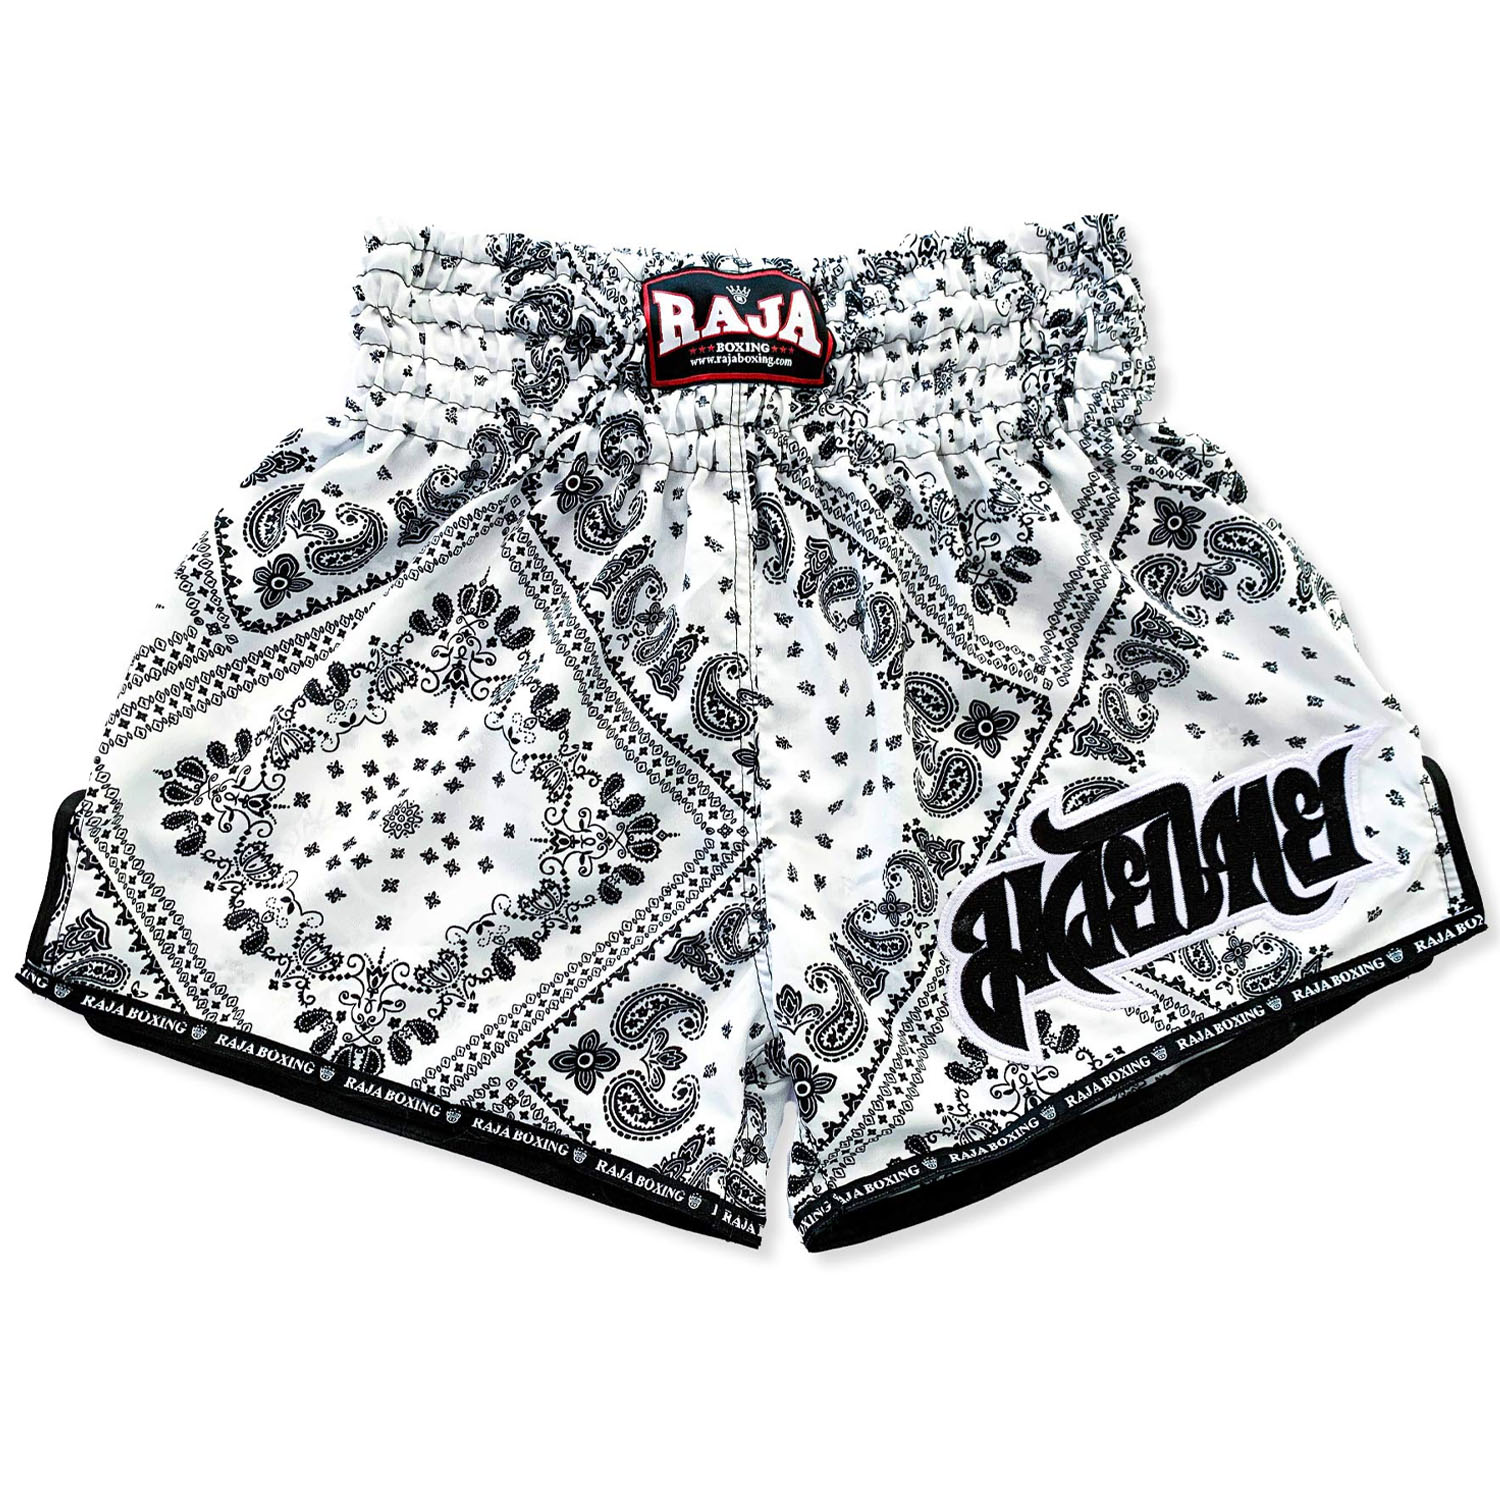 RAJA Boxing Muay Thai Shorts, SP65-038, white-black